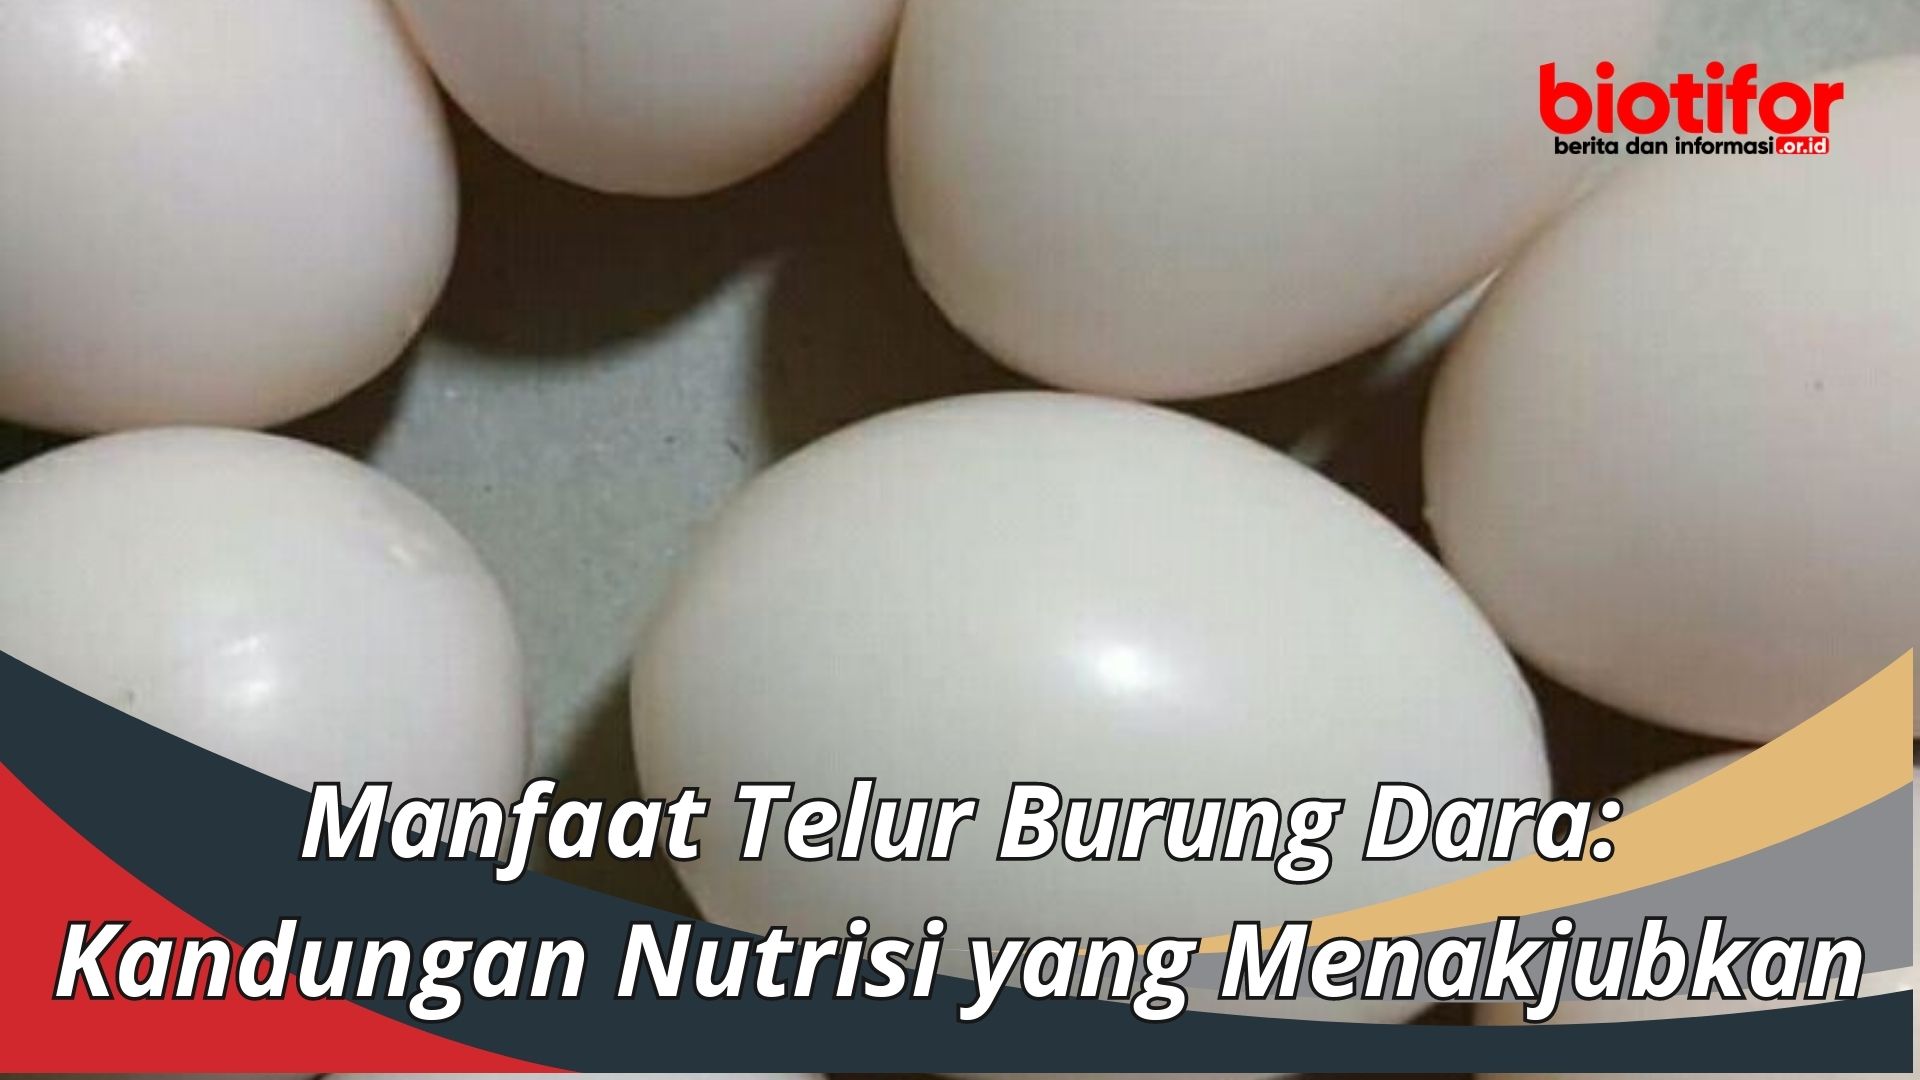 Manfaat Telur Burung Dara: Kandungan Nutrisi yang Menakjubkan